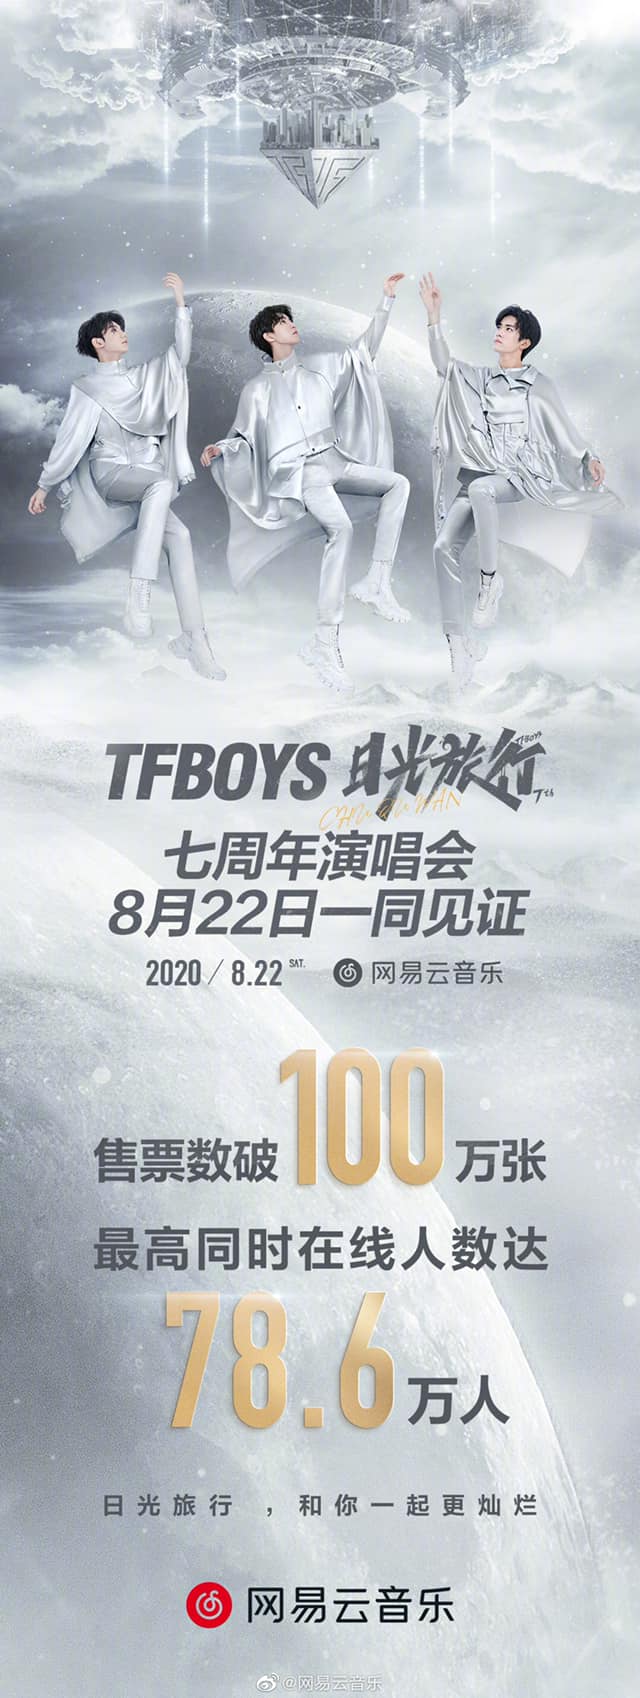 Concert của TFBOYS vượt mặt BTS: Phá vỡ kỉ lục với số người xem live cao nhất thế giới BTS CBIZ concert KPOP dịch dương thiên tỉ kỉ lục TFBOYS thế giới Vương Nguyên Vương Tuấn Khải